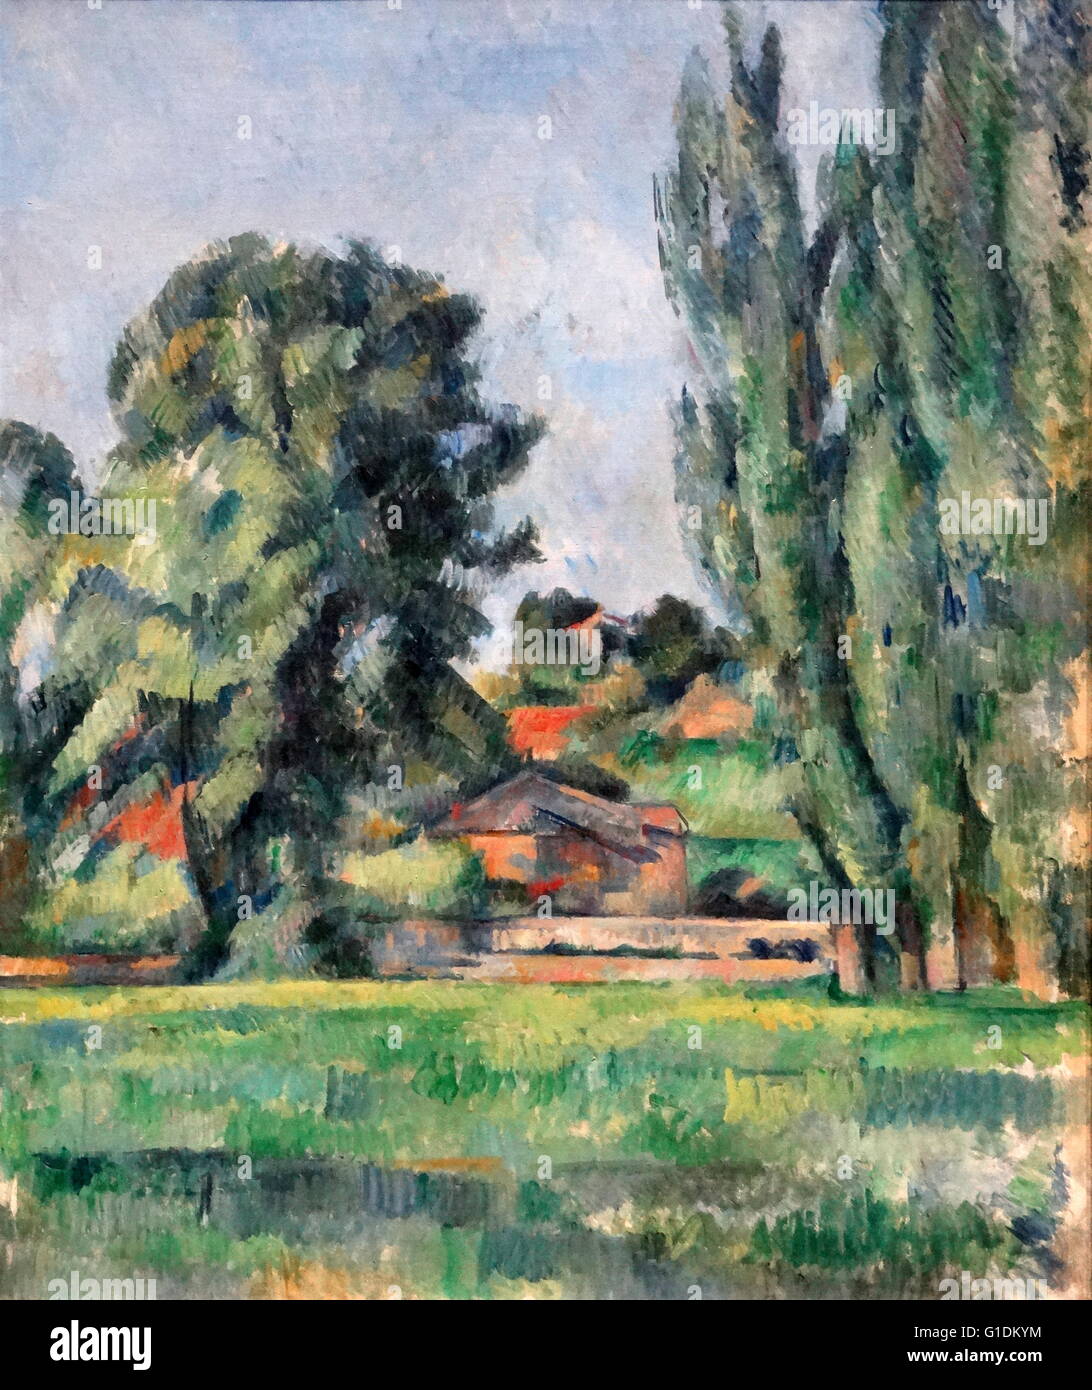 Gemälde mit dem Titel "Landschaft mit Pappeln" von Paul Cézanne, (1839-1906), ein französischer Künstler und post-impressionistischen Maler. Vom 19. Jahrhundert Stockfoto